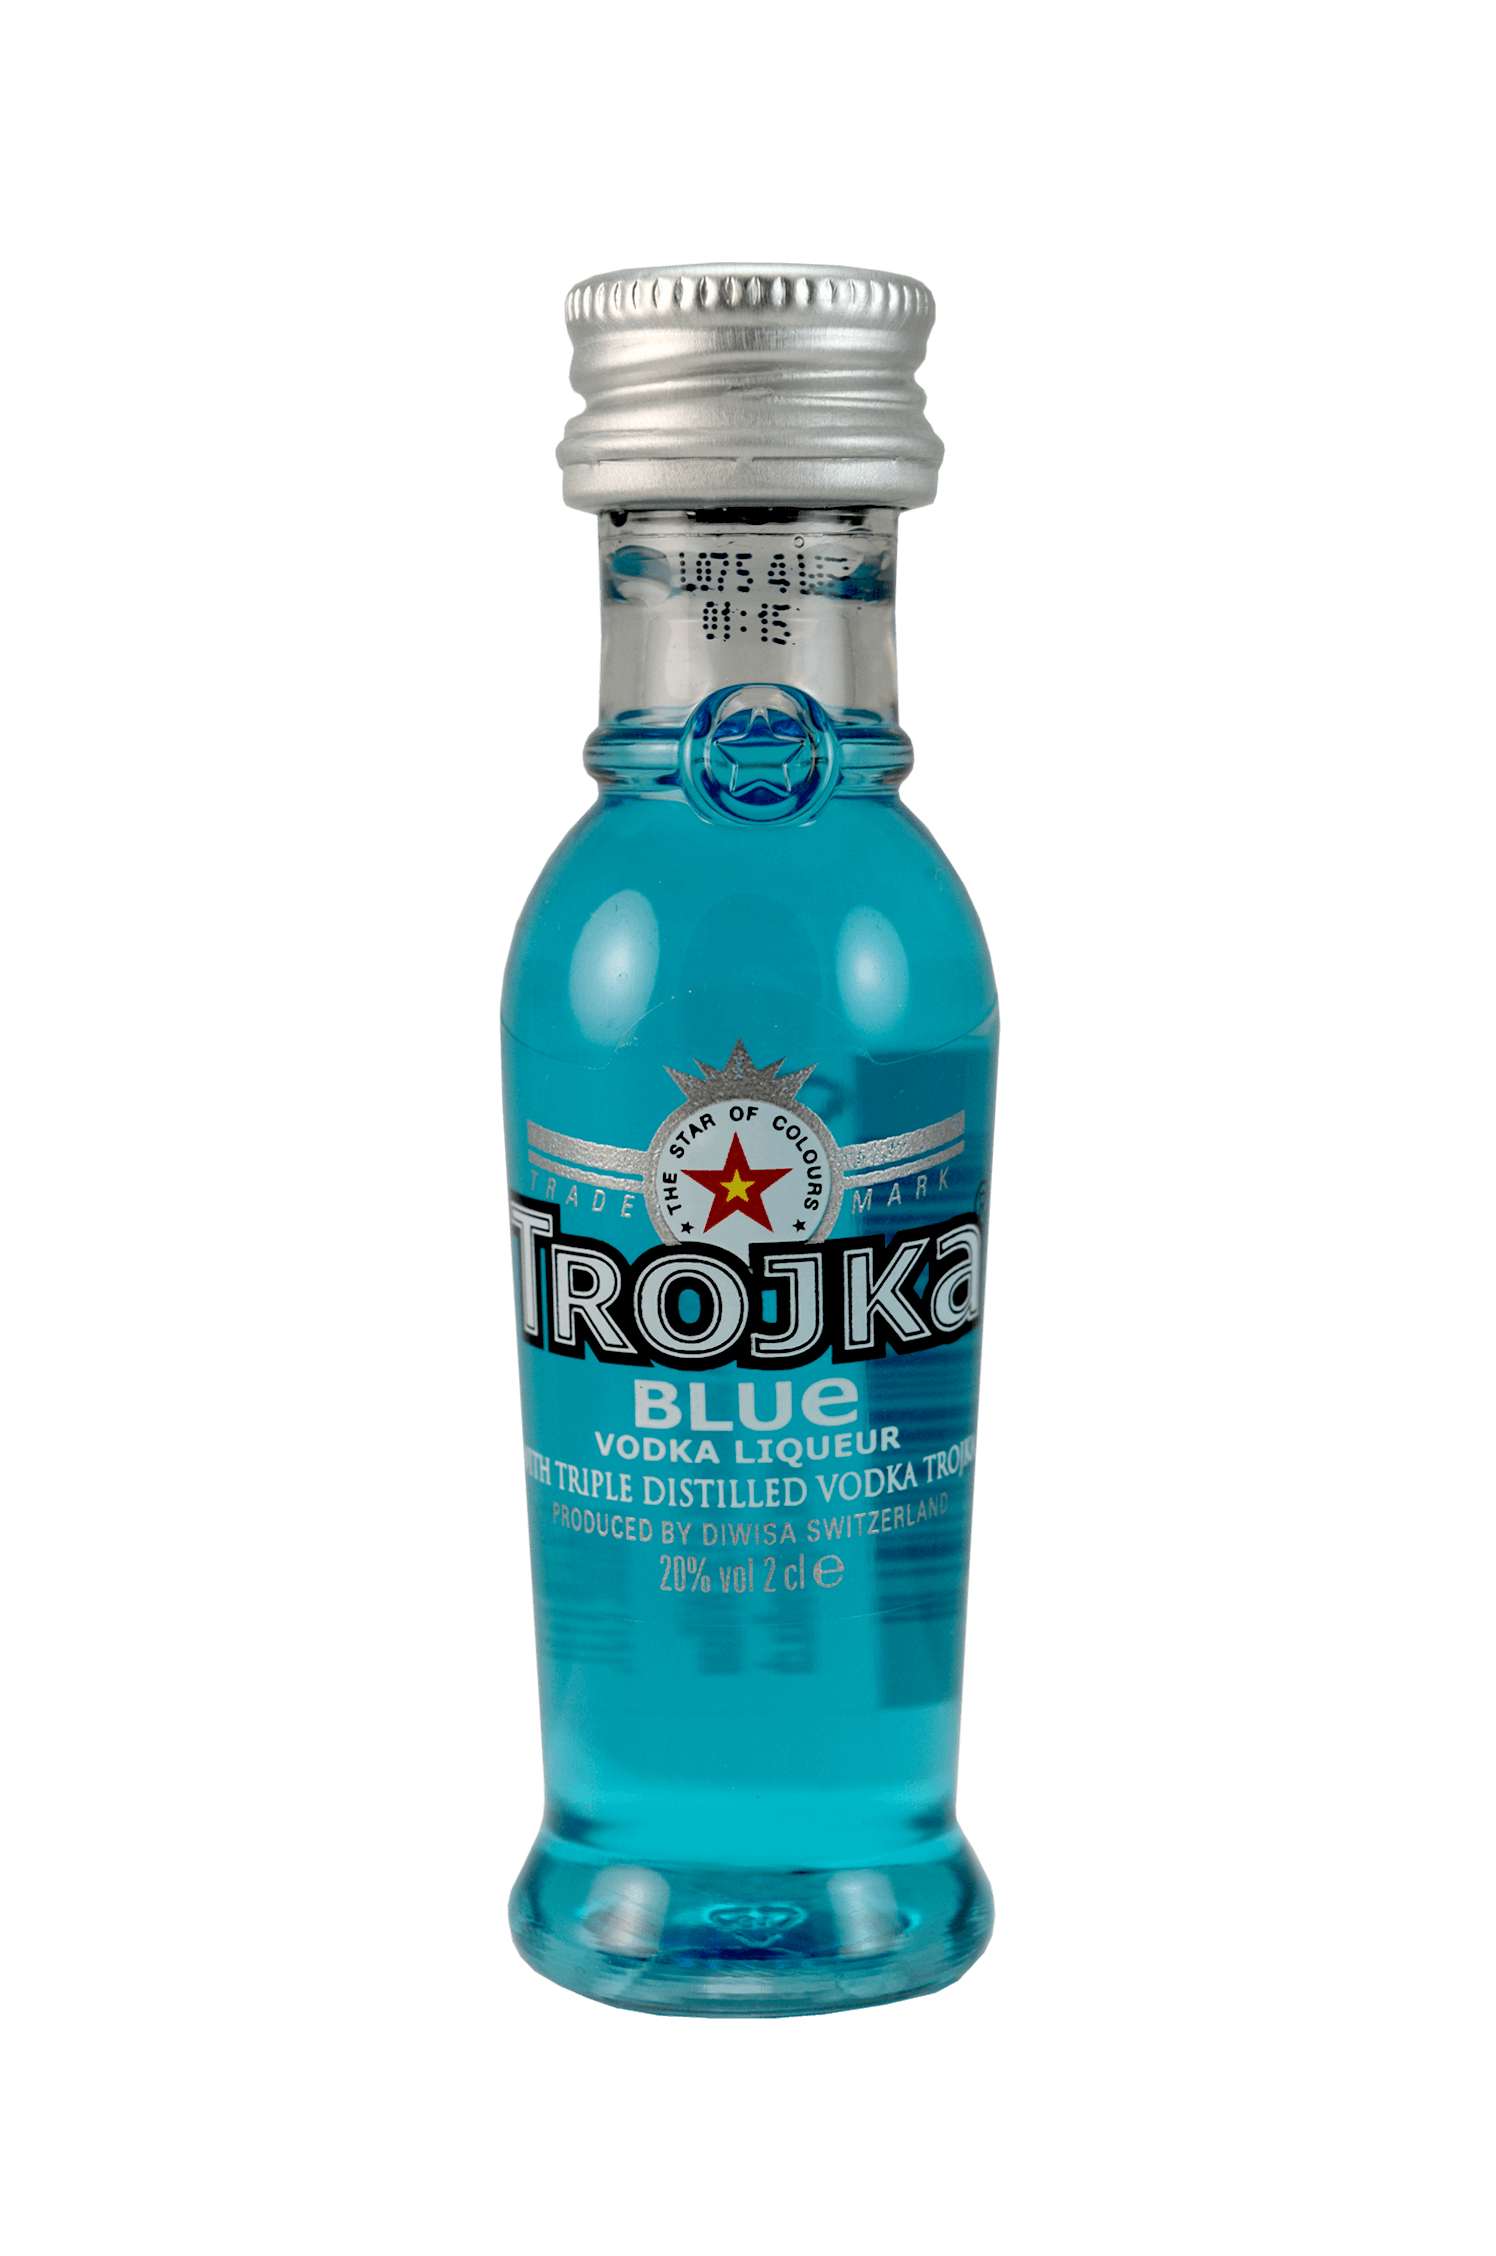 Trojka Blue Vodka Liqueur